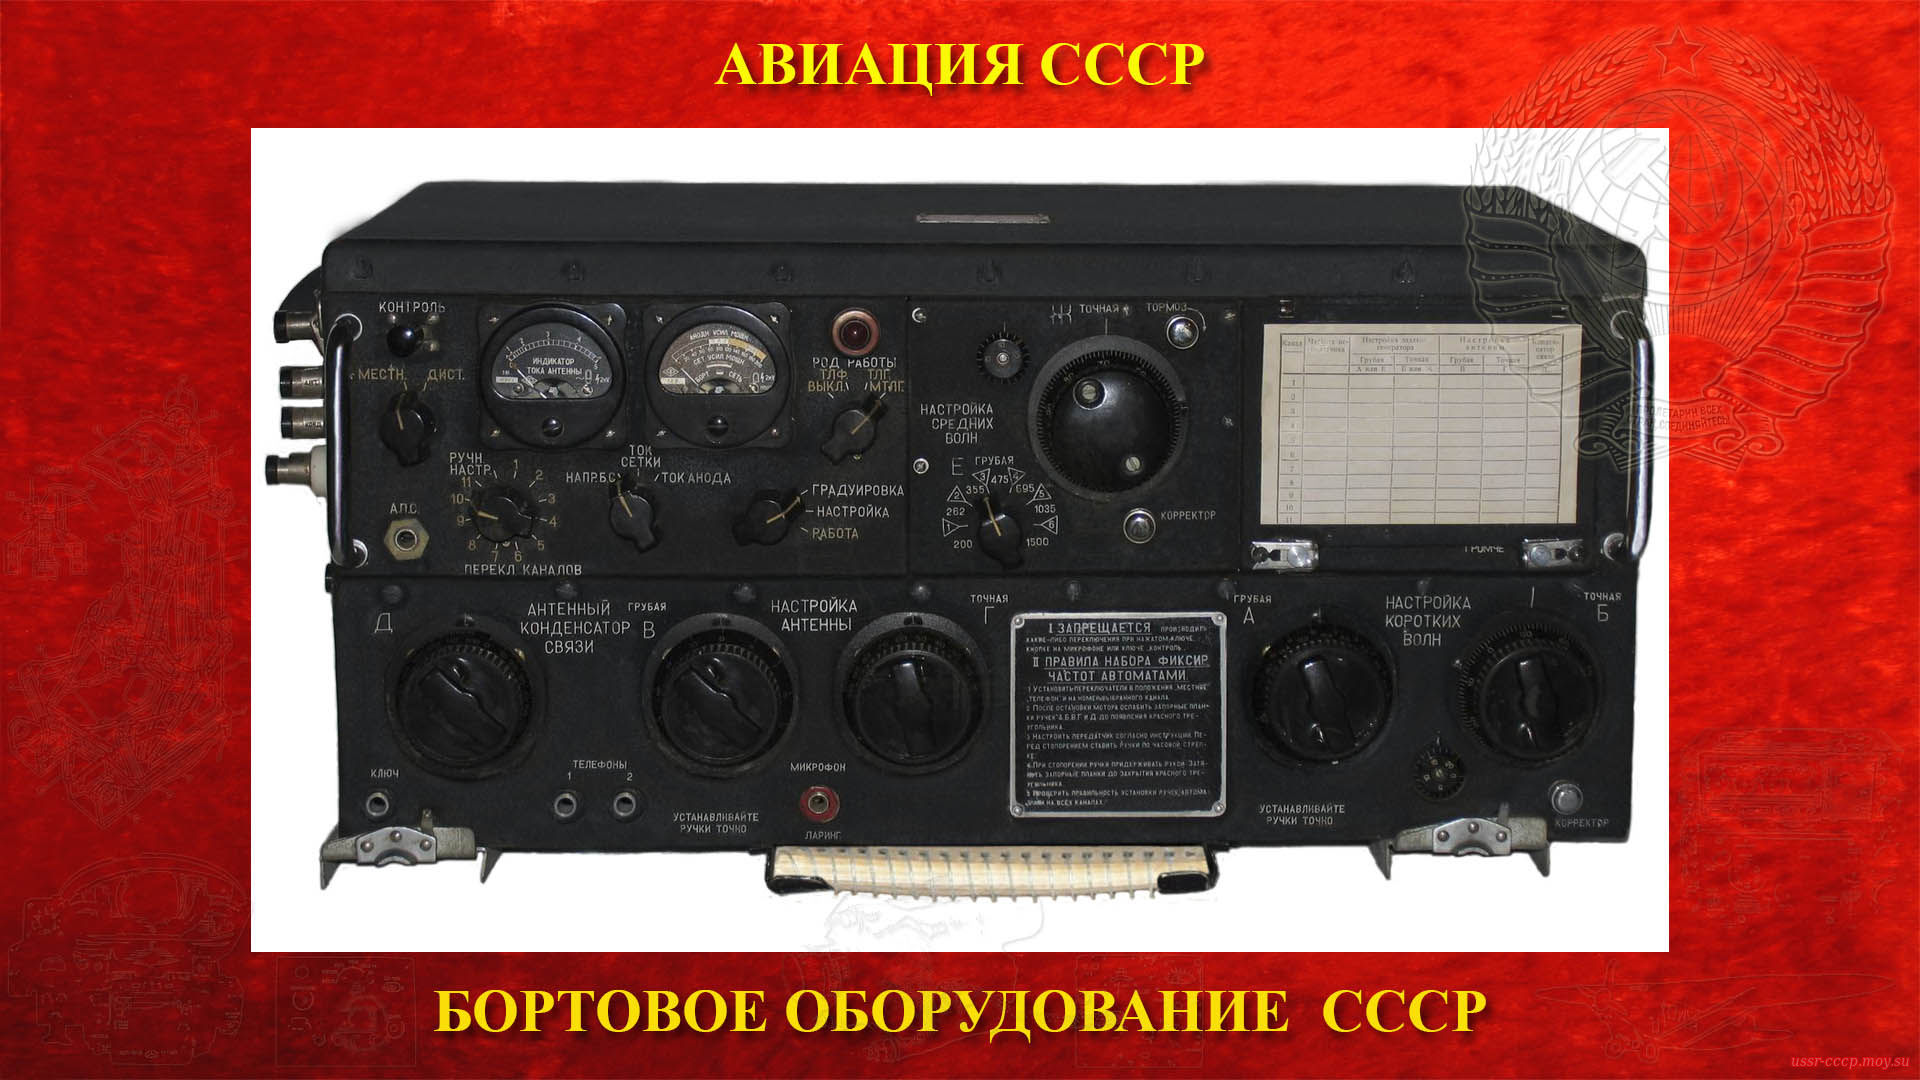 Р-807 (РСБ-70 — Беркут — Дунай) (повествование)